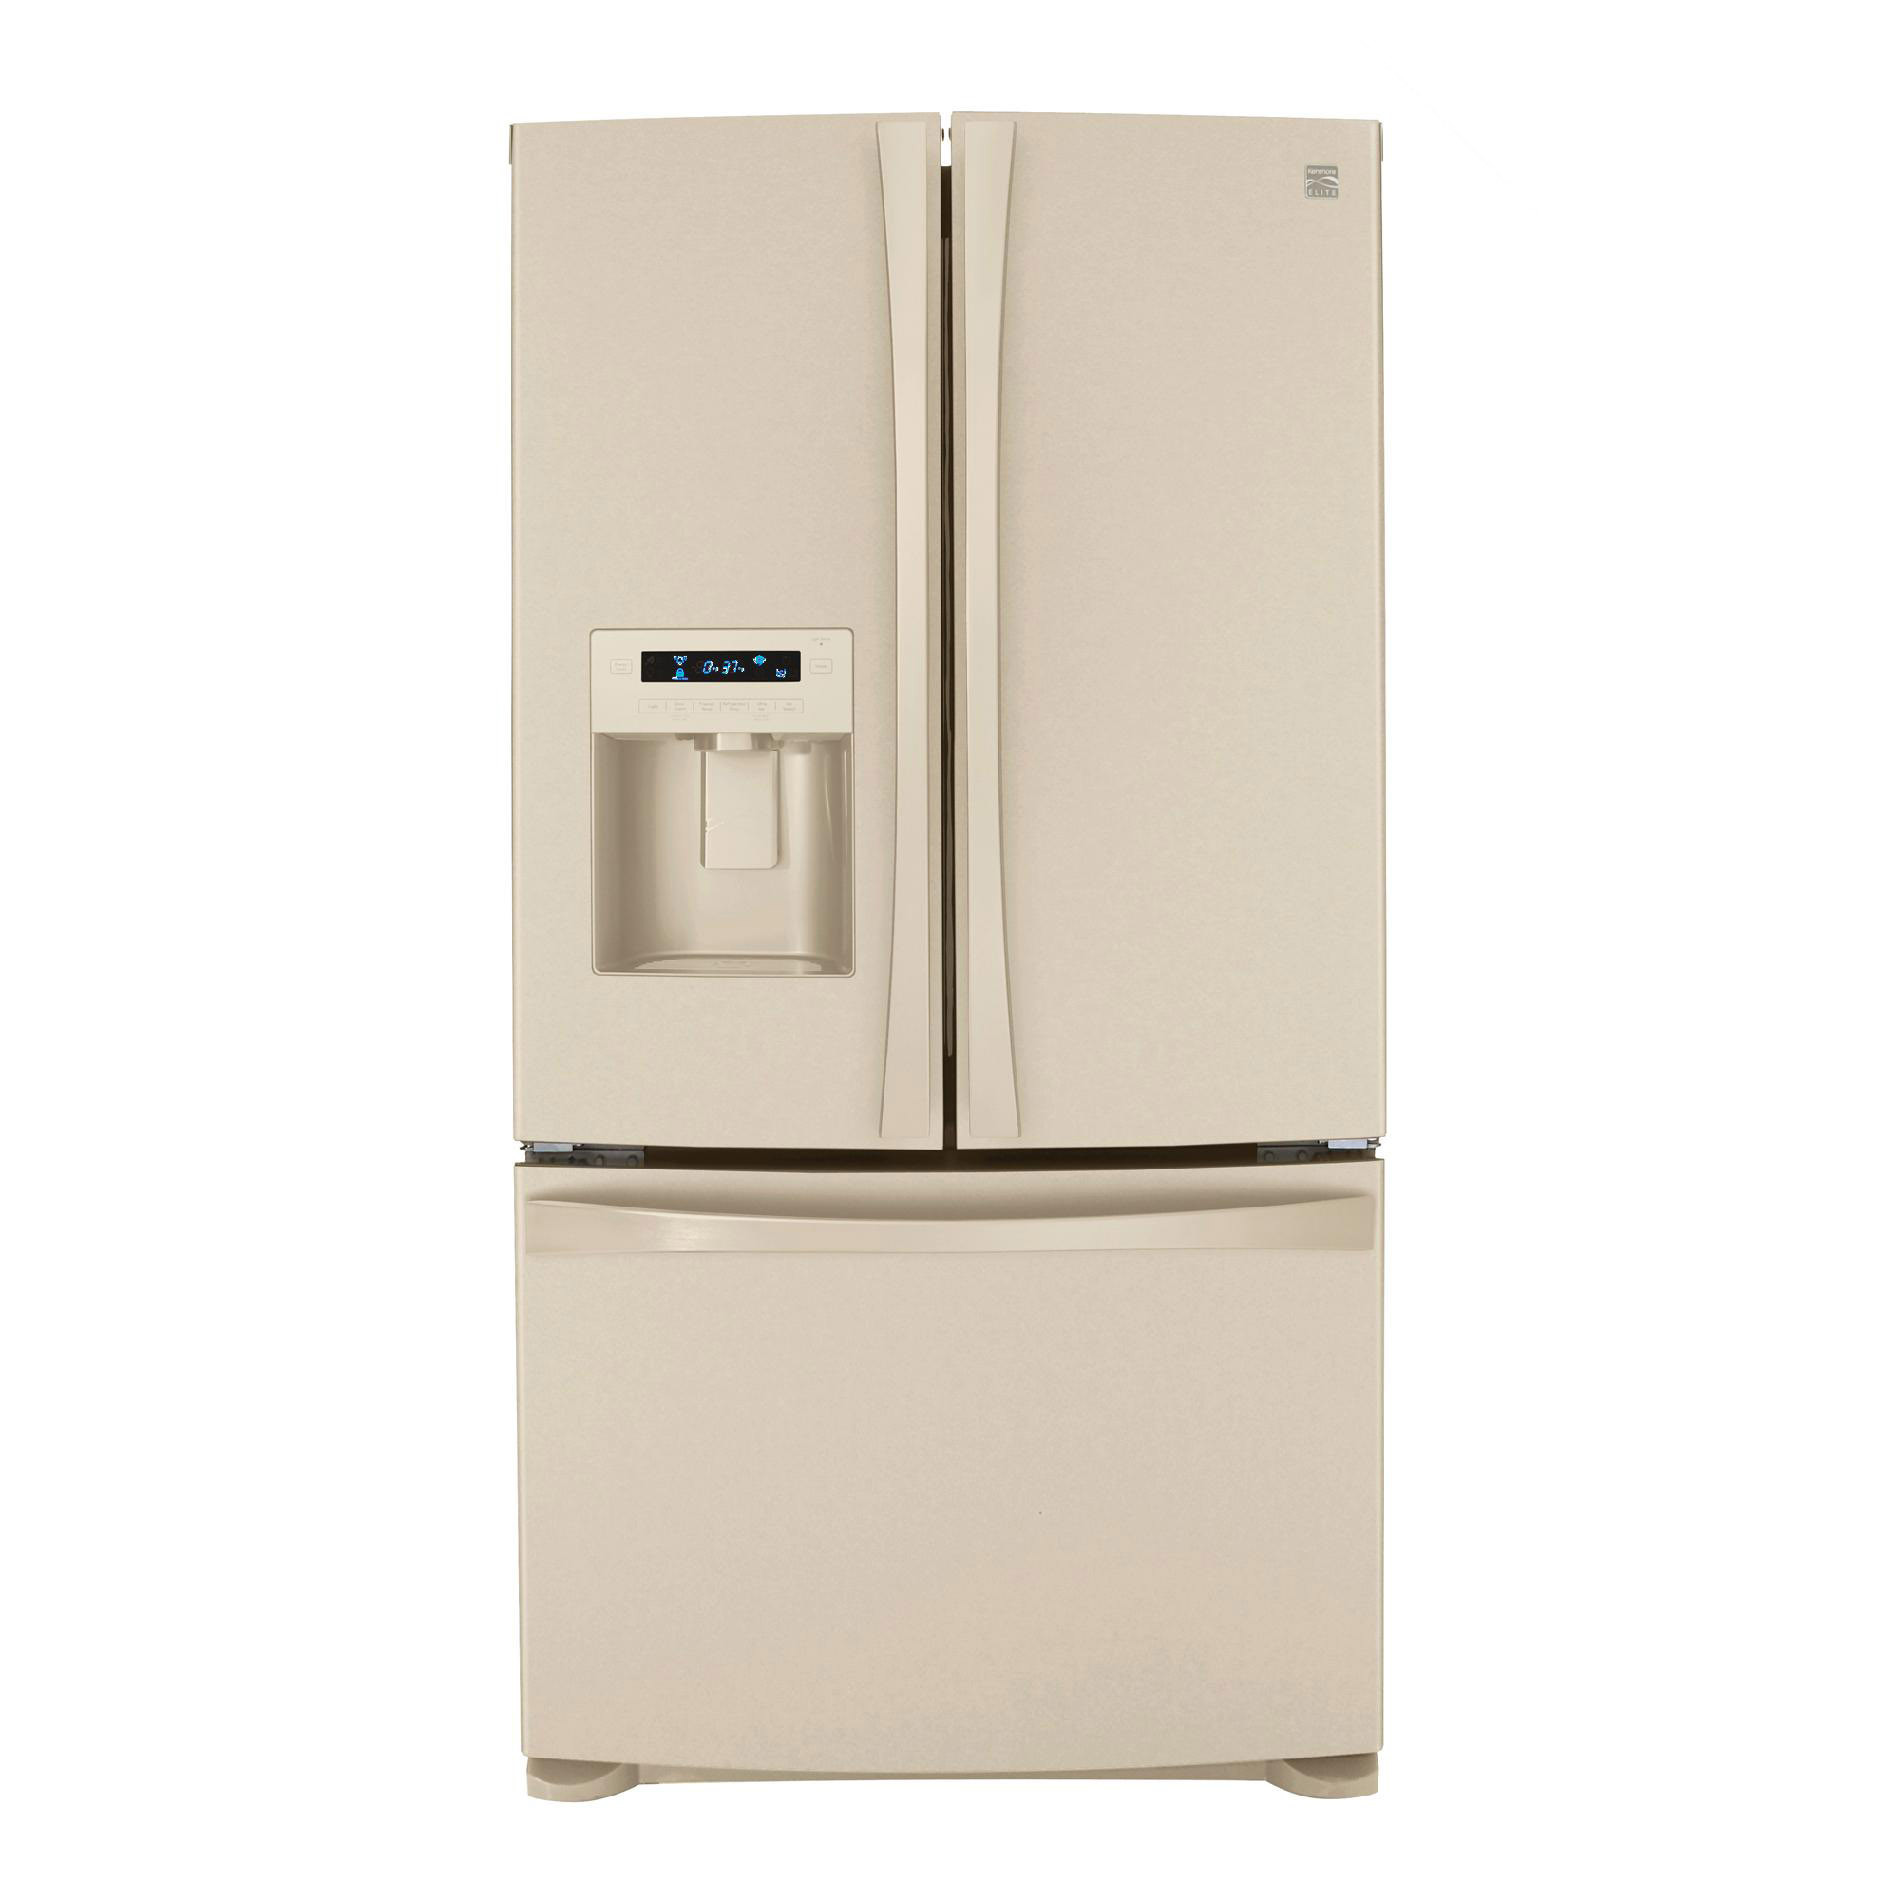 Bisque Refrigerator Bottom Freezer
 Kenmore Elite 27 6 cu ft French Door Bottom